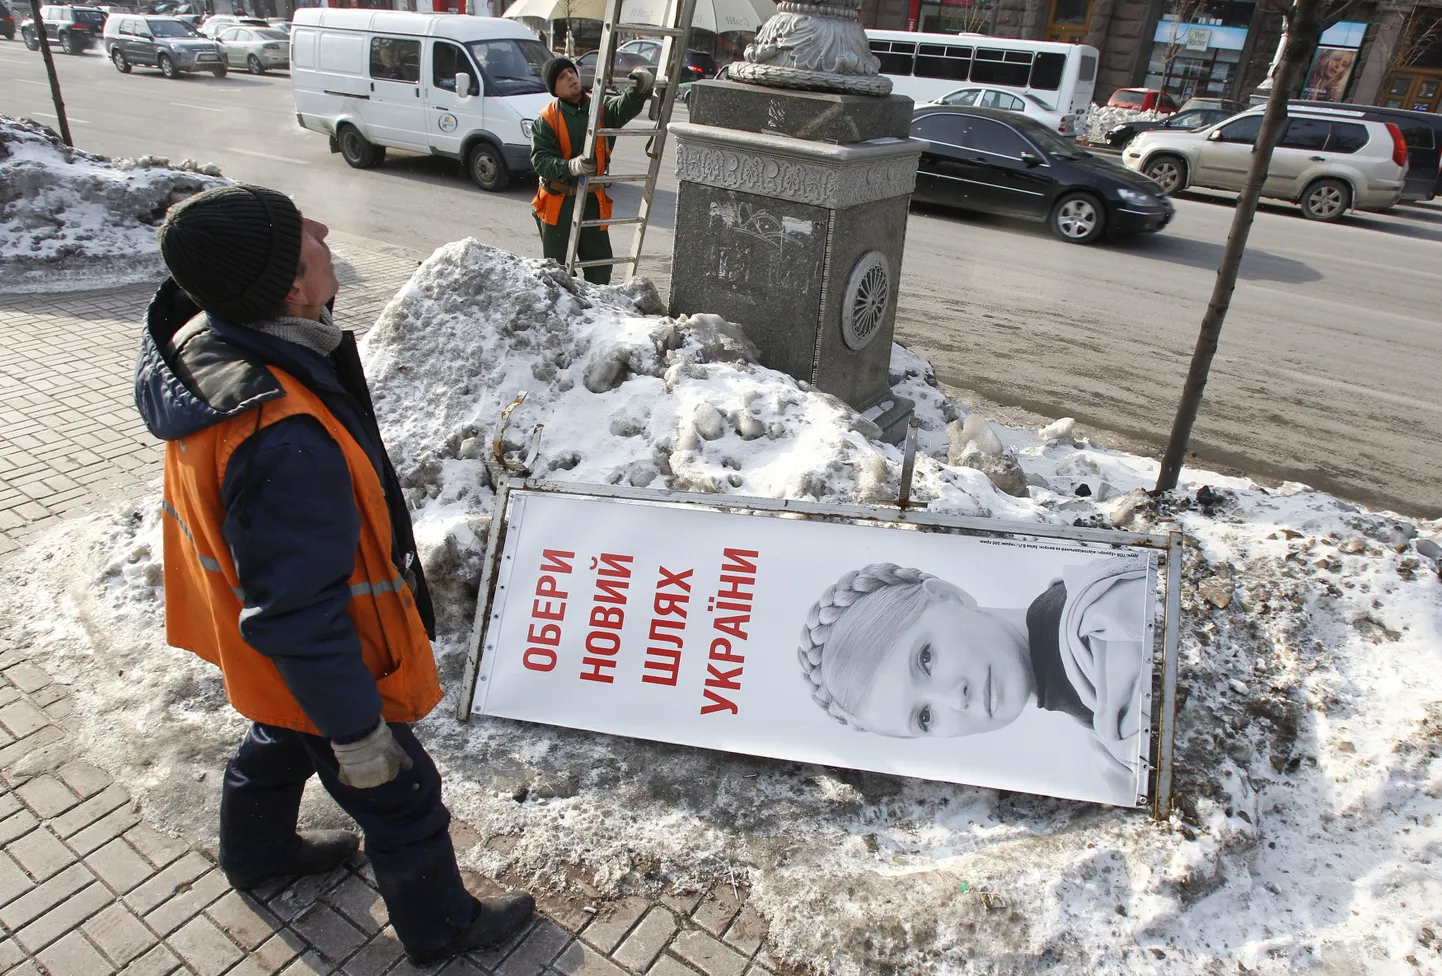 Kiievi töölised paigutavad posti otsa presidendiks kandideeriva Julia Tõmošenko näopildiga plakatit.